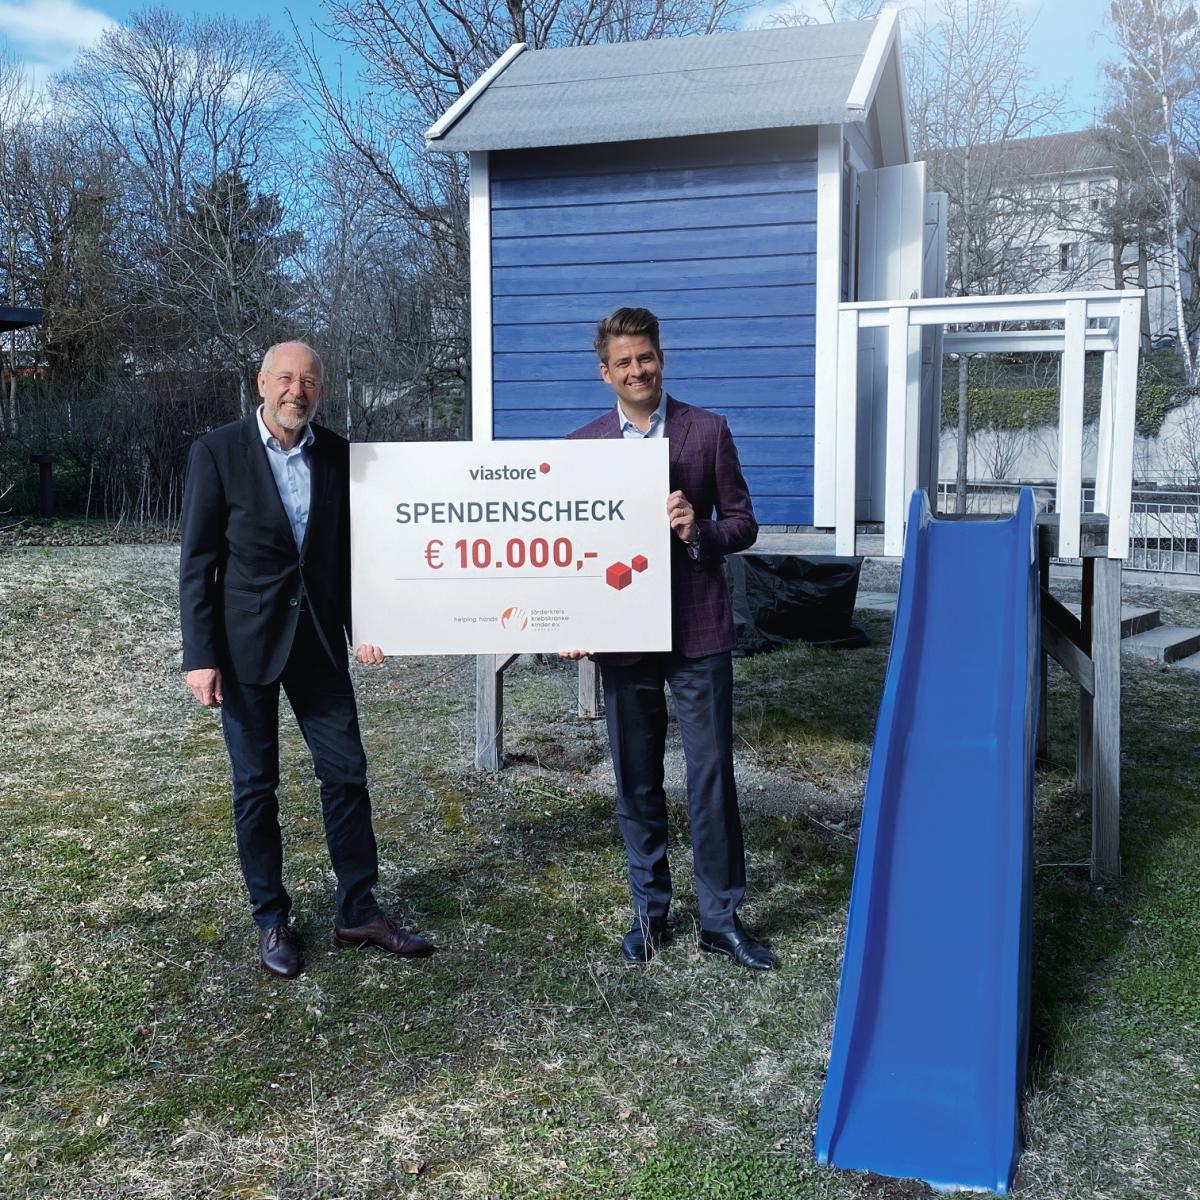 Philipp Hahn-Woernle, CEO von viastore, überreicht vor blauer Kinderrutsche Spendenscheck an Stefan Nägele im Garten vom Blauen Haus